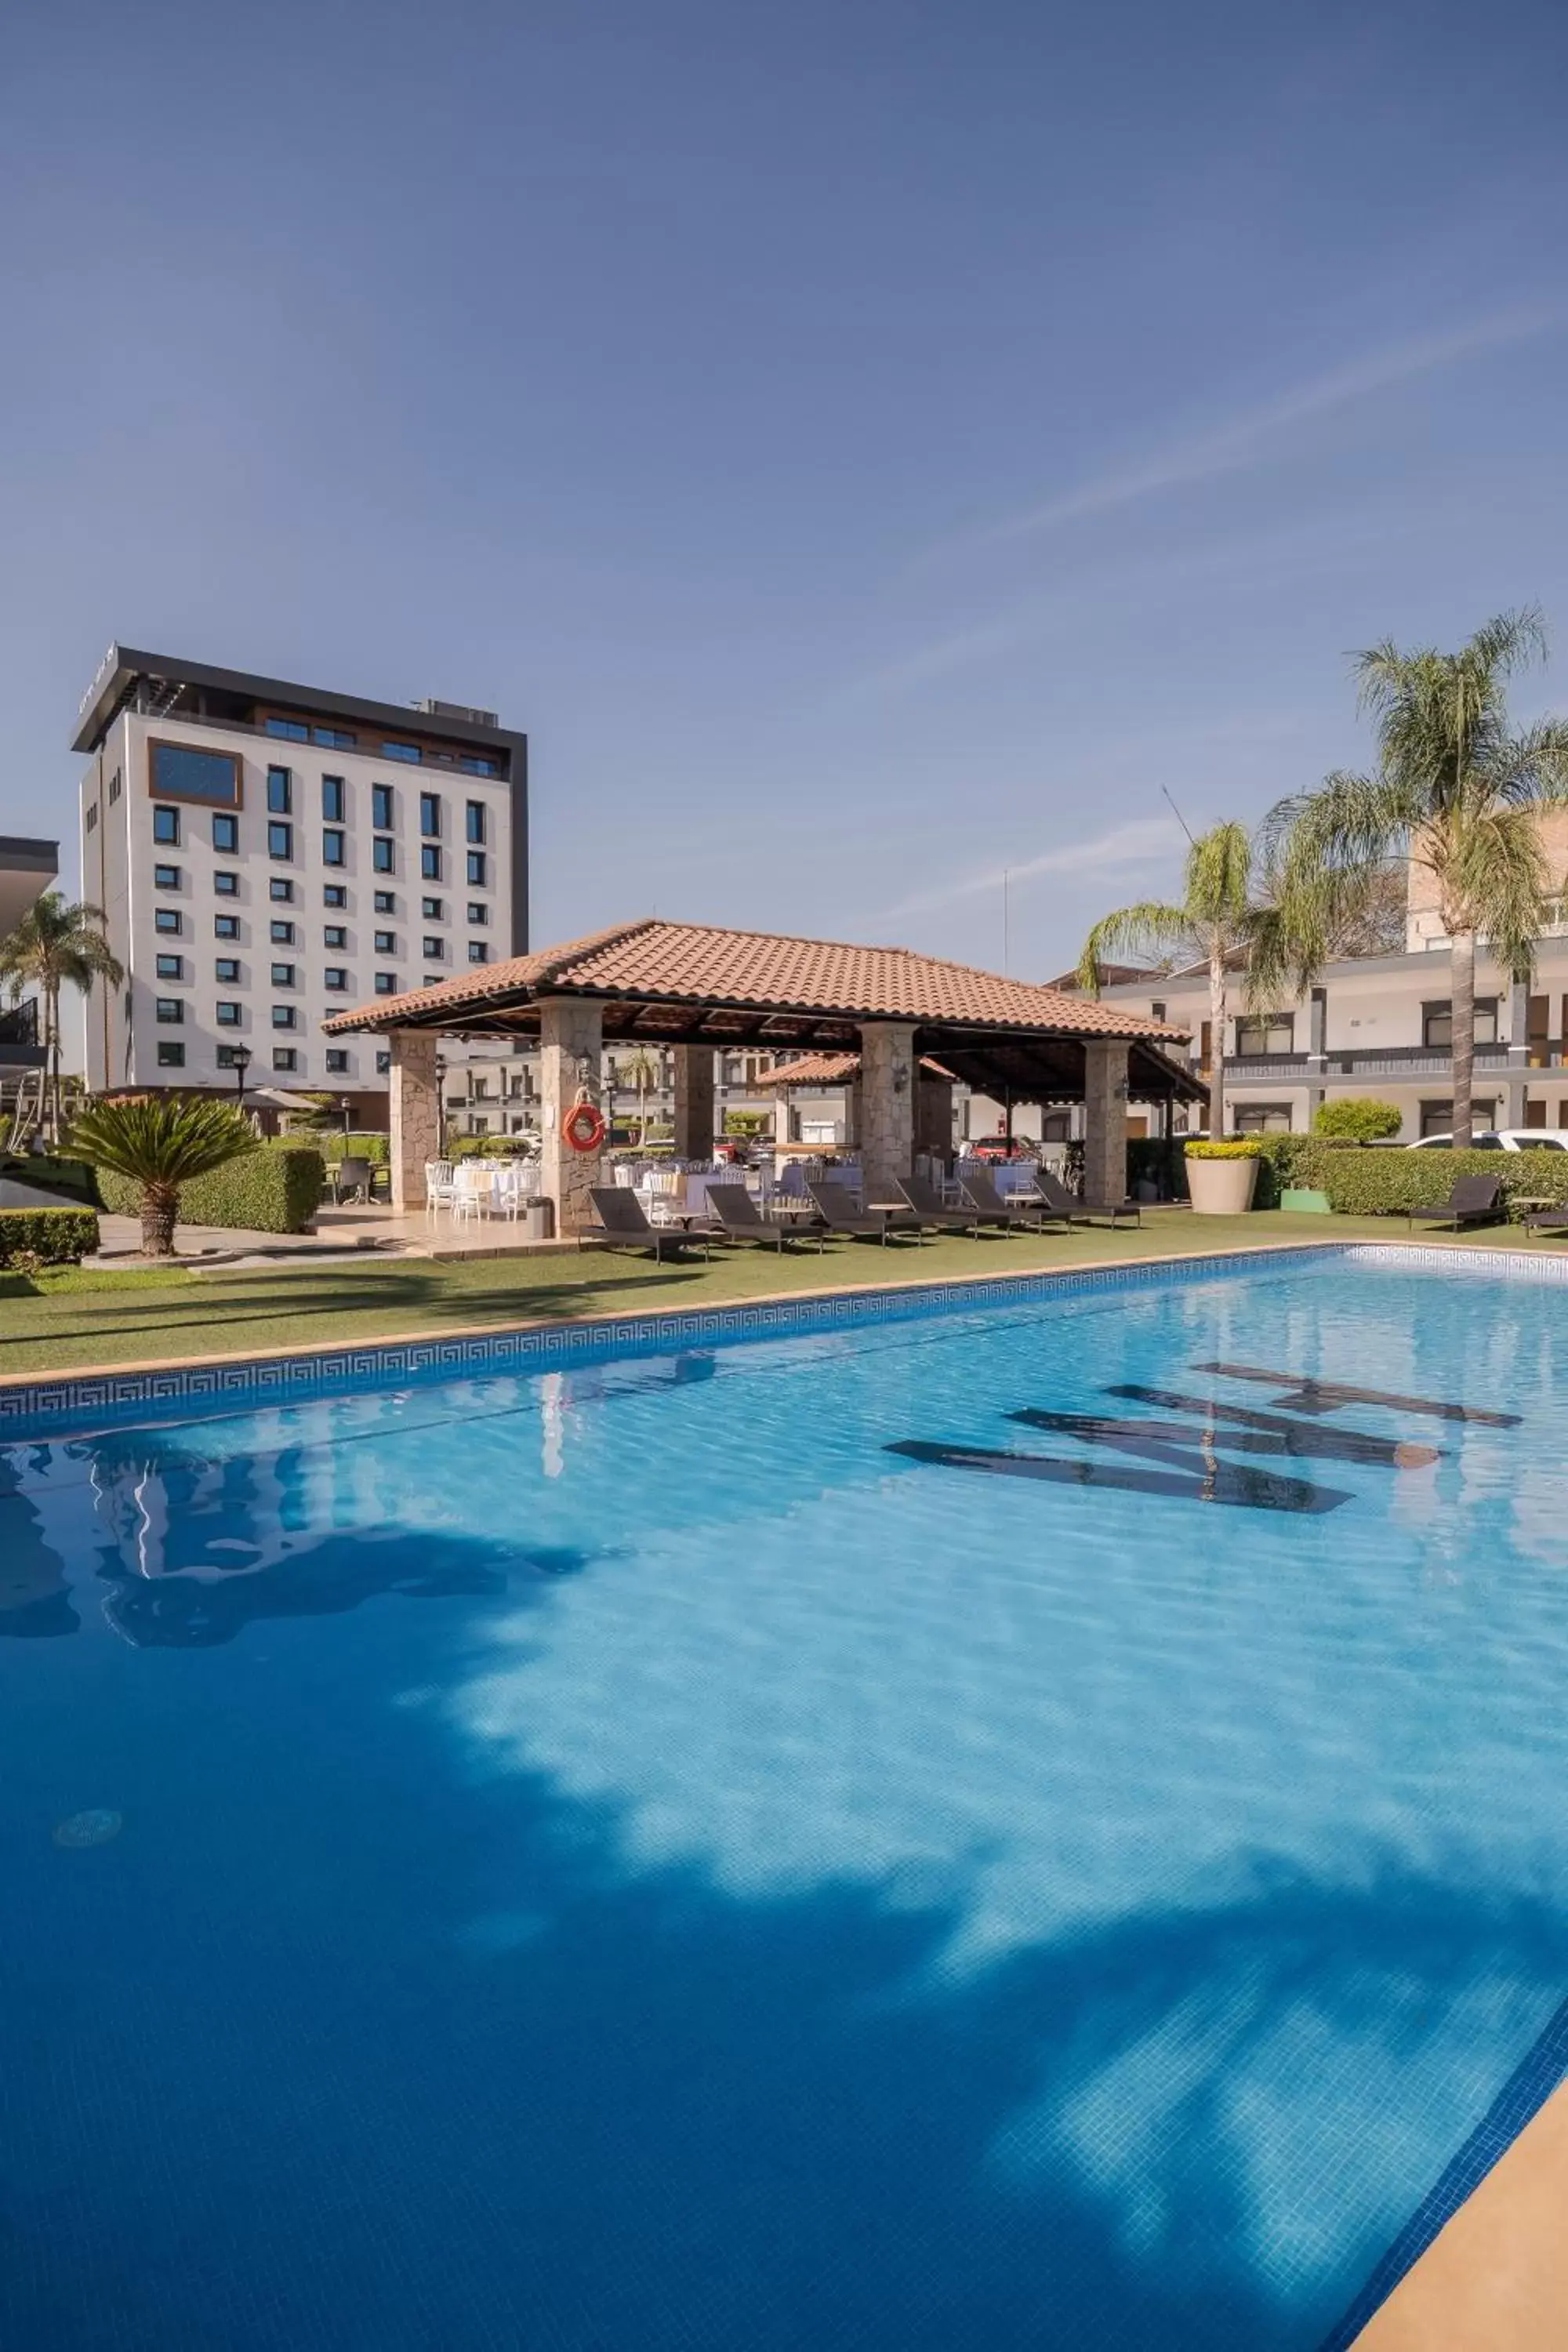 Swimming Pool in Hotel Malibu